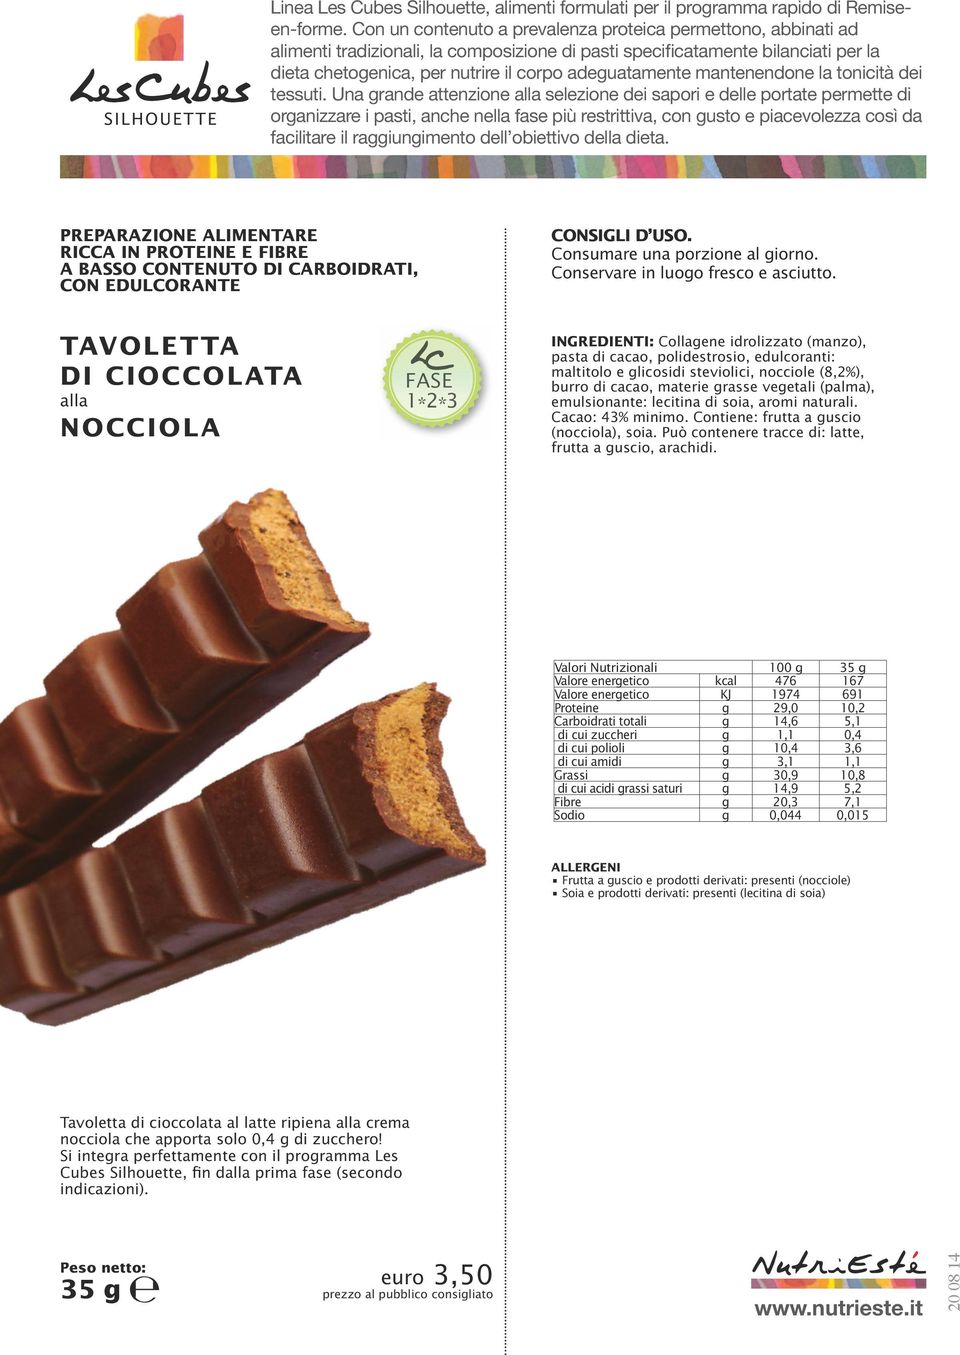 materie grasse vegetali (palma), emulsionante: lecitina di 2* soia, aromi naturali. Cacao: 4% minimo. Contiene: frutta a guscio (nocciola), soia.